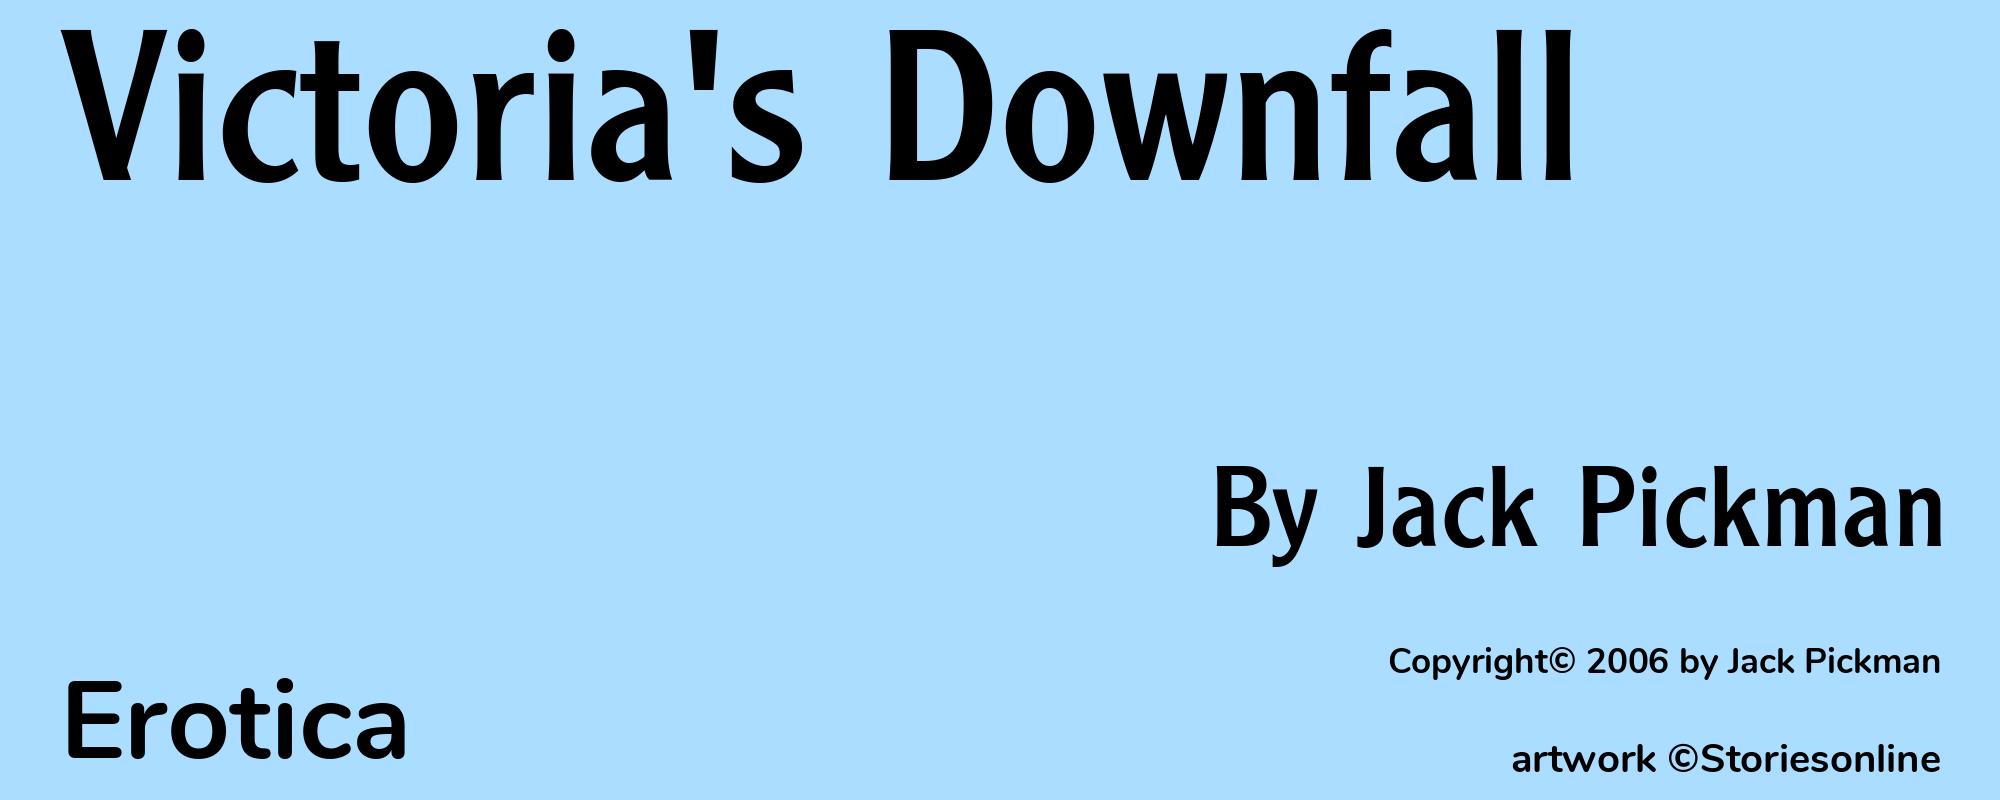 Victoria's Downfall - Cover